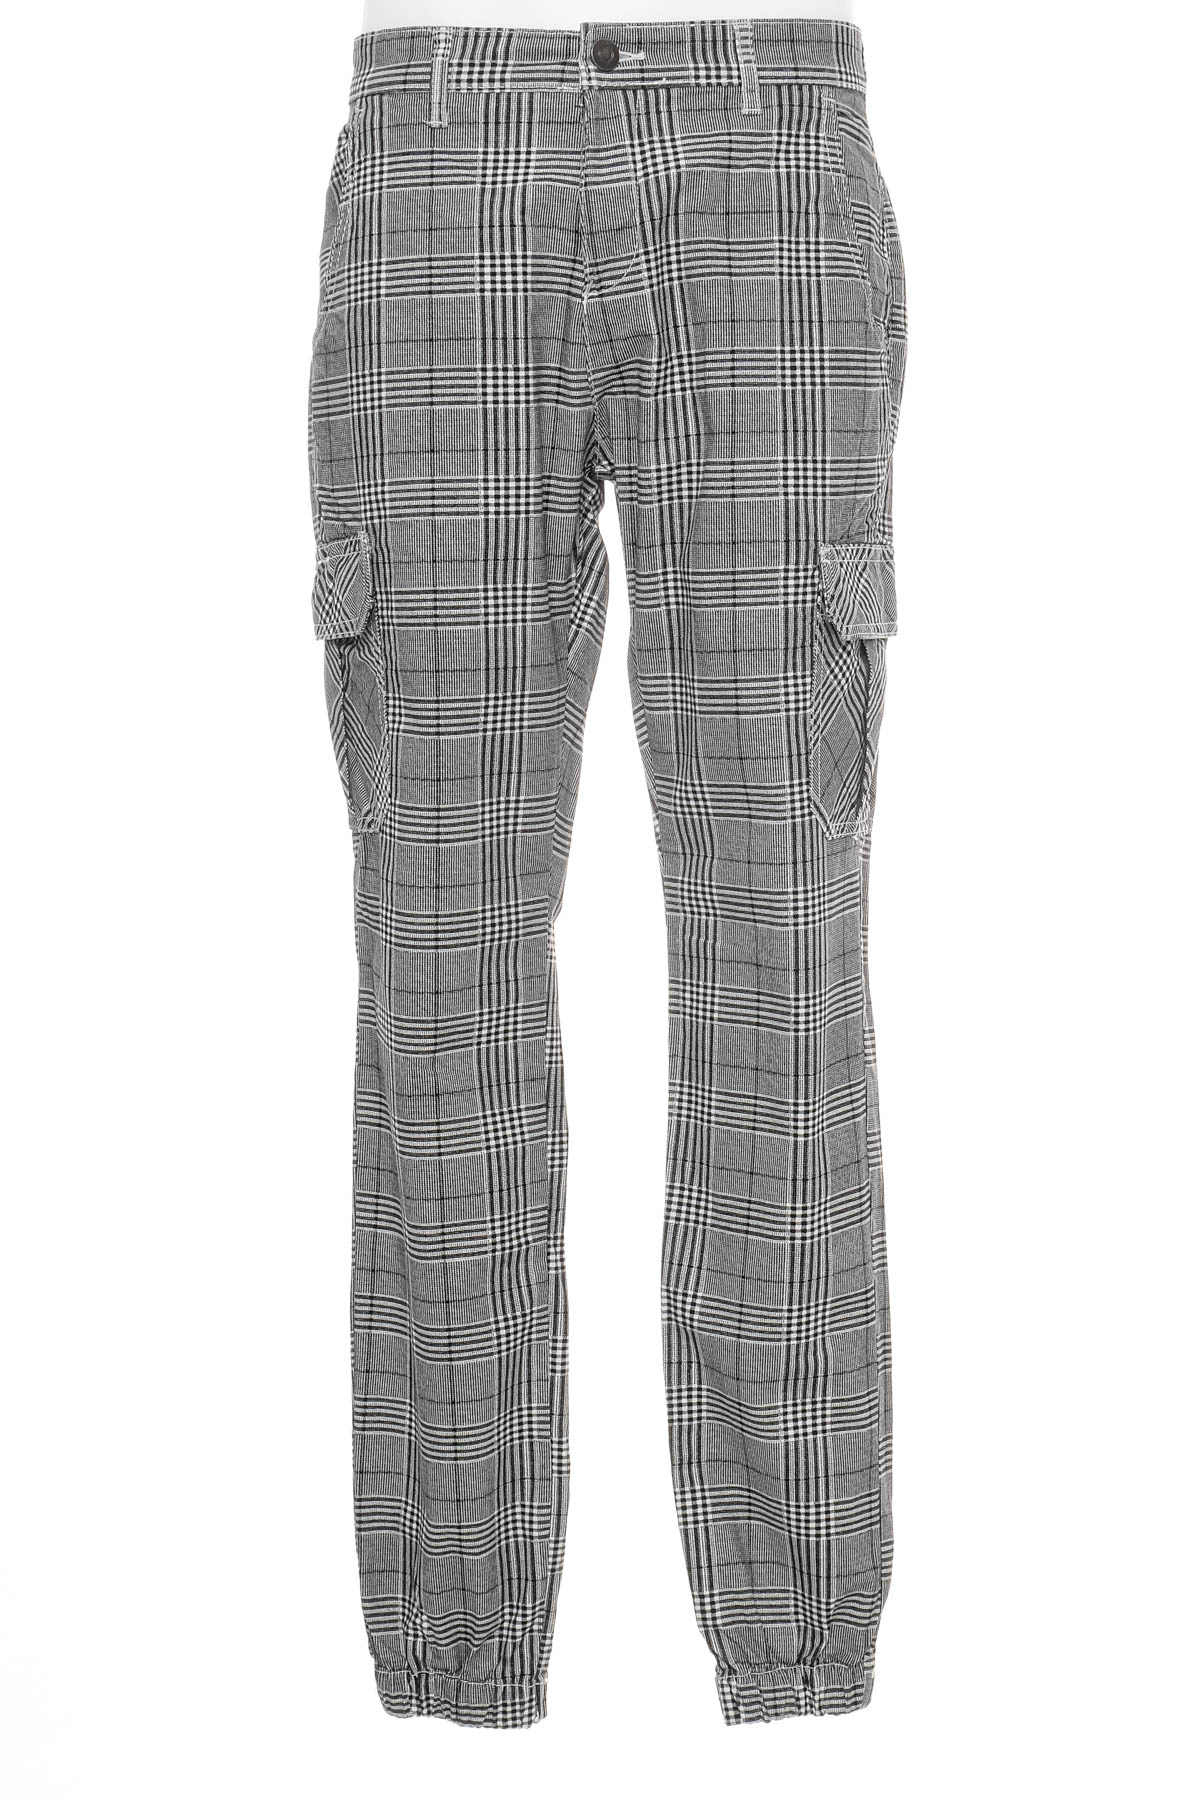 Pantalon pentru bărbați - URBAN CLASSICS - 0